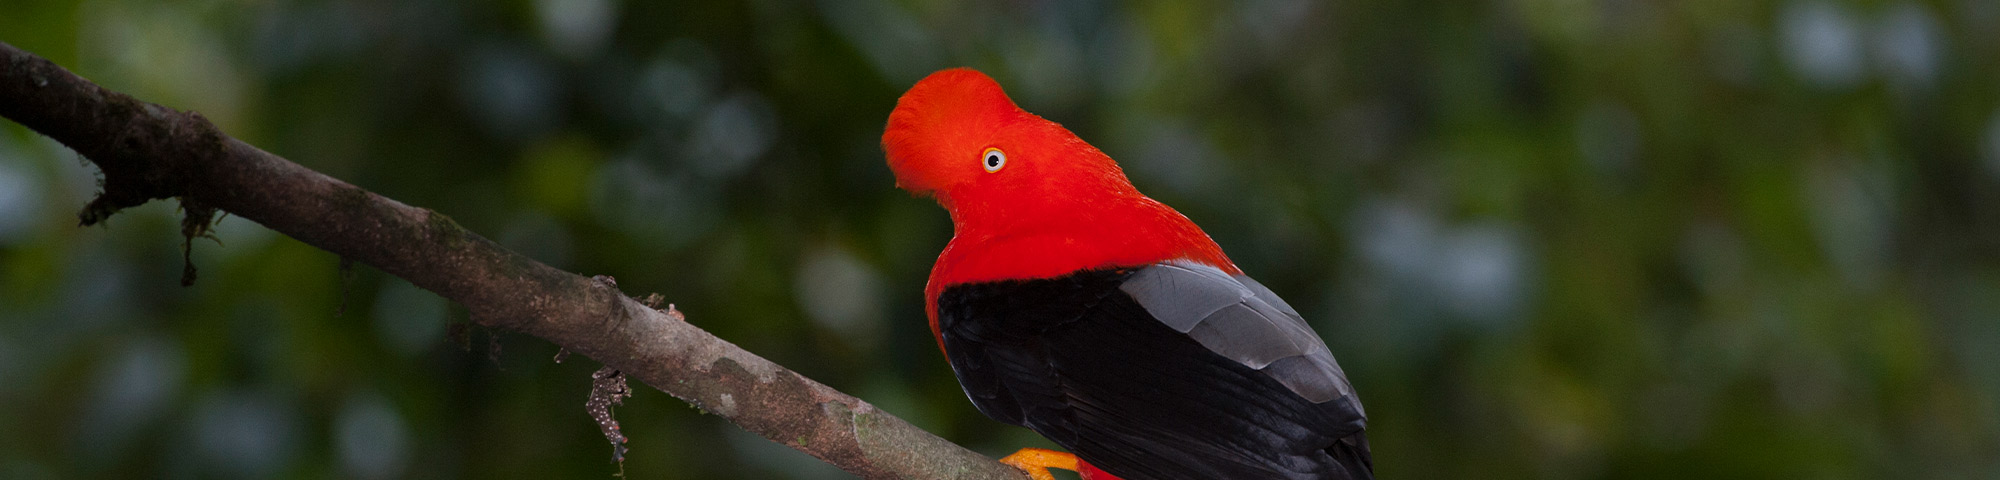 Perú se consolida como principal destino turístico para el avistamiento de aves